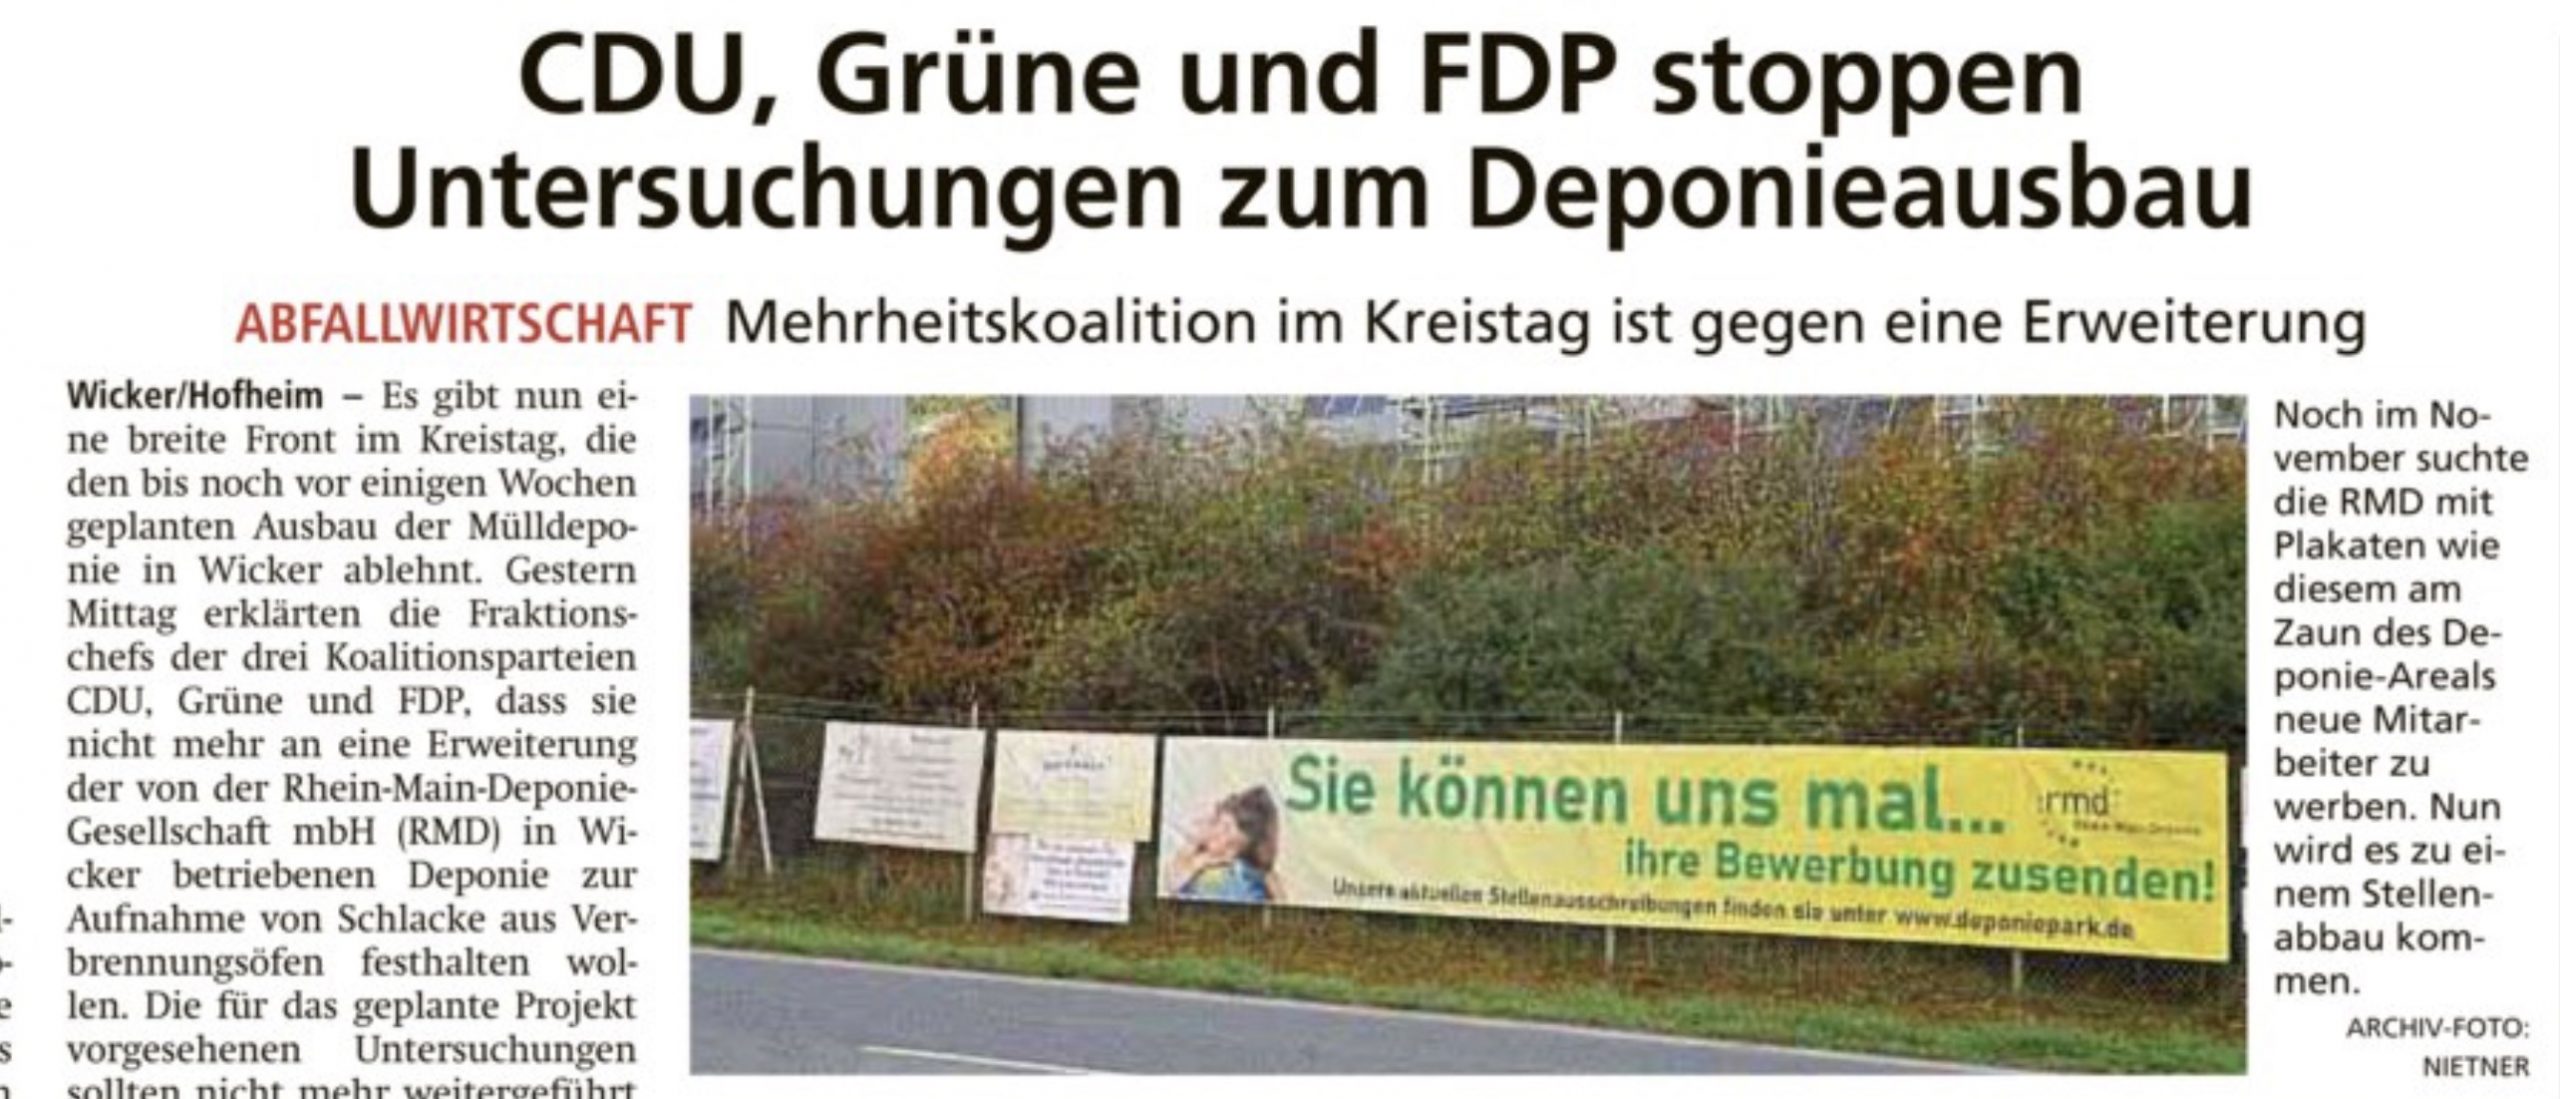 CDU, Grüne und FDP stoppen Untersuchungen zum Deponieausbau